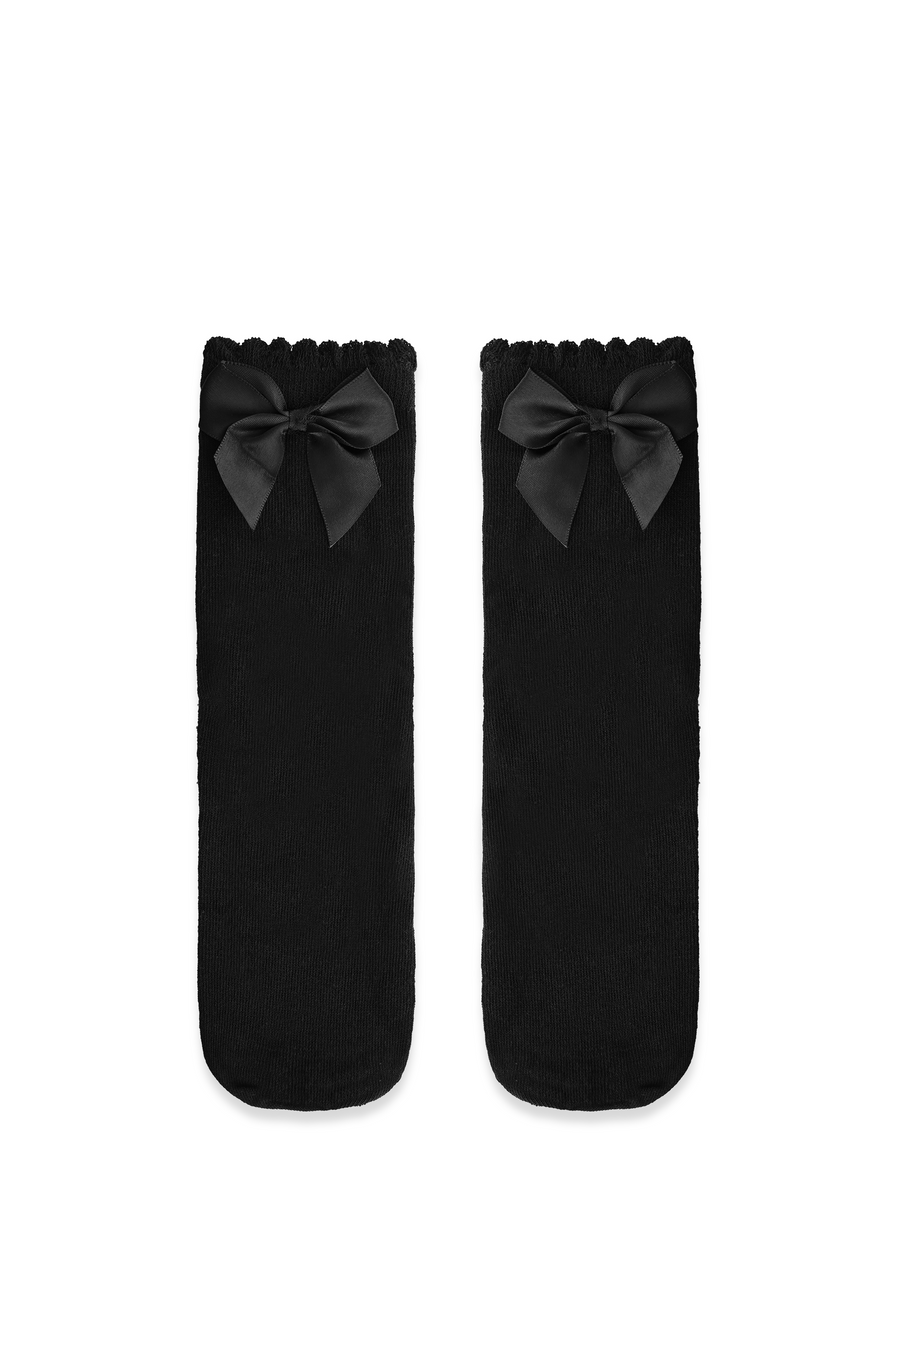 Prim Bow Socks in Black